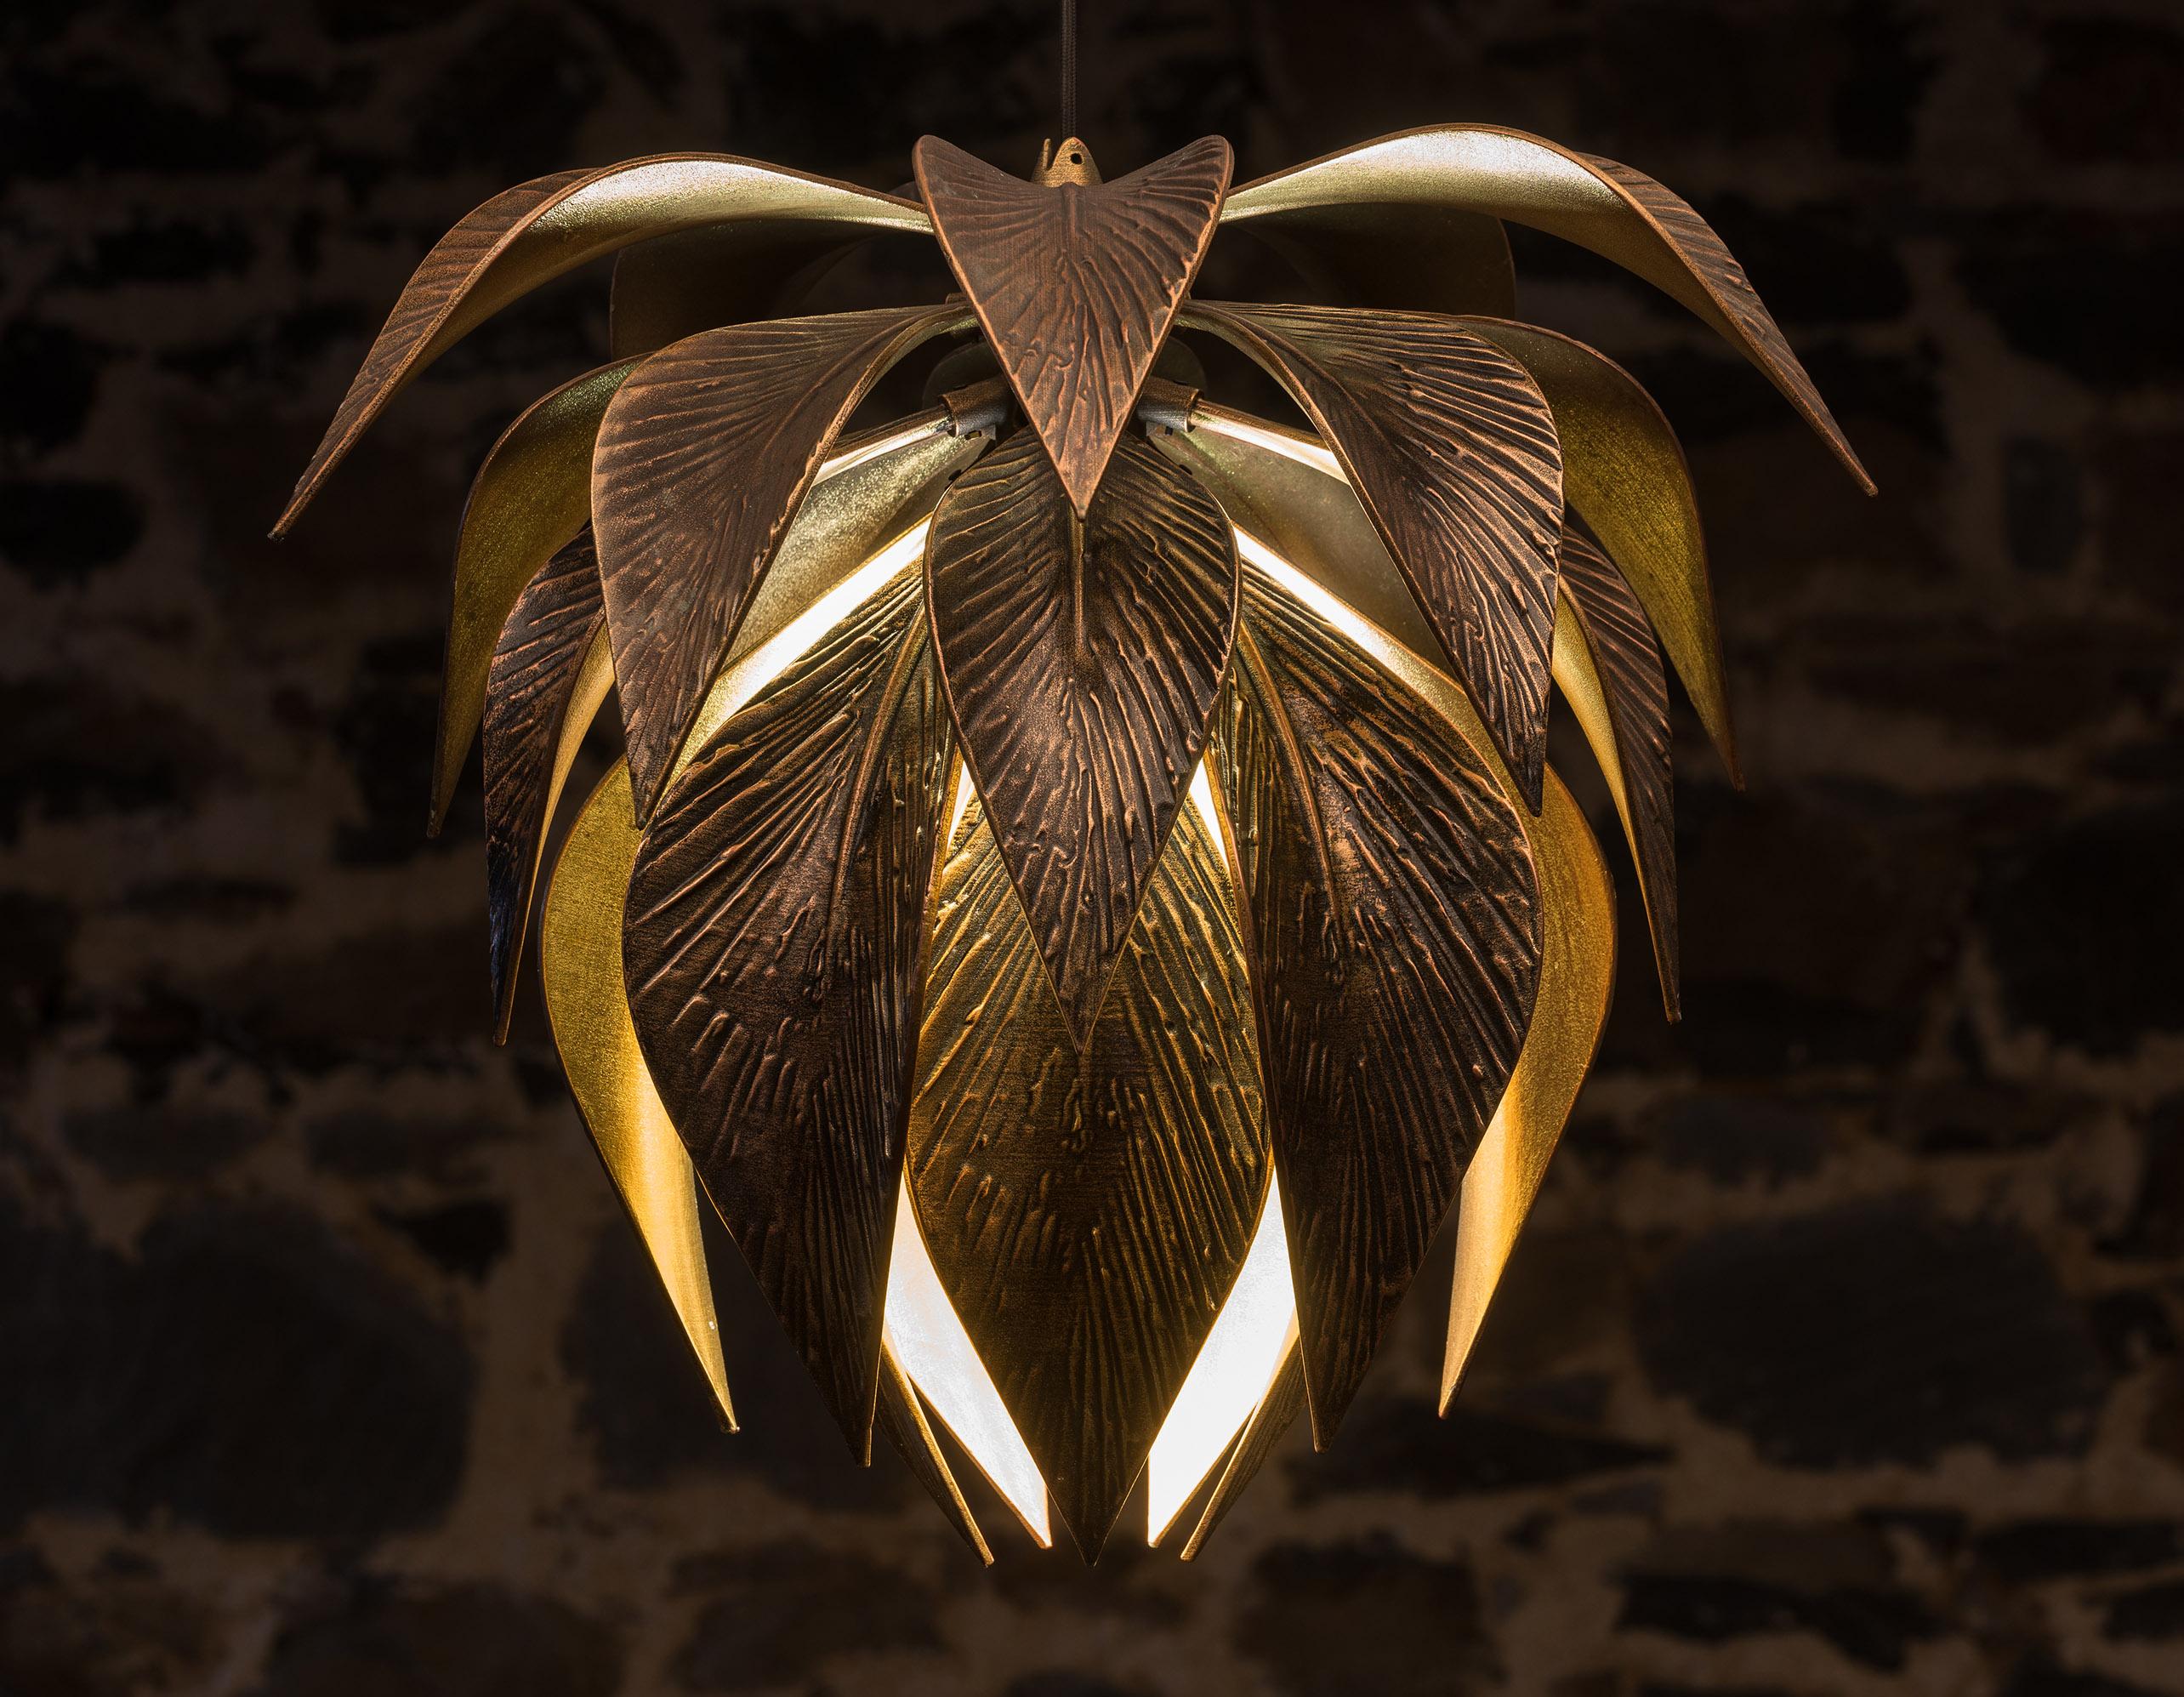 La lampe suspendue Lotus respire le luxe et la sophistication, offrant un aperçu spectaculaire du dessus et du dessous de chaque feuille. Chaque angle de la lumière offre une vue unique et fascinante de ses feuilles métalliques. Cette suspension